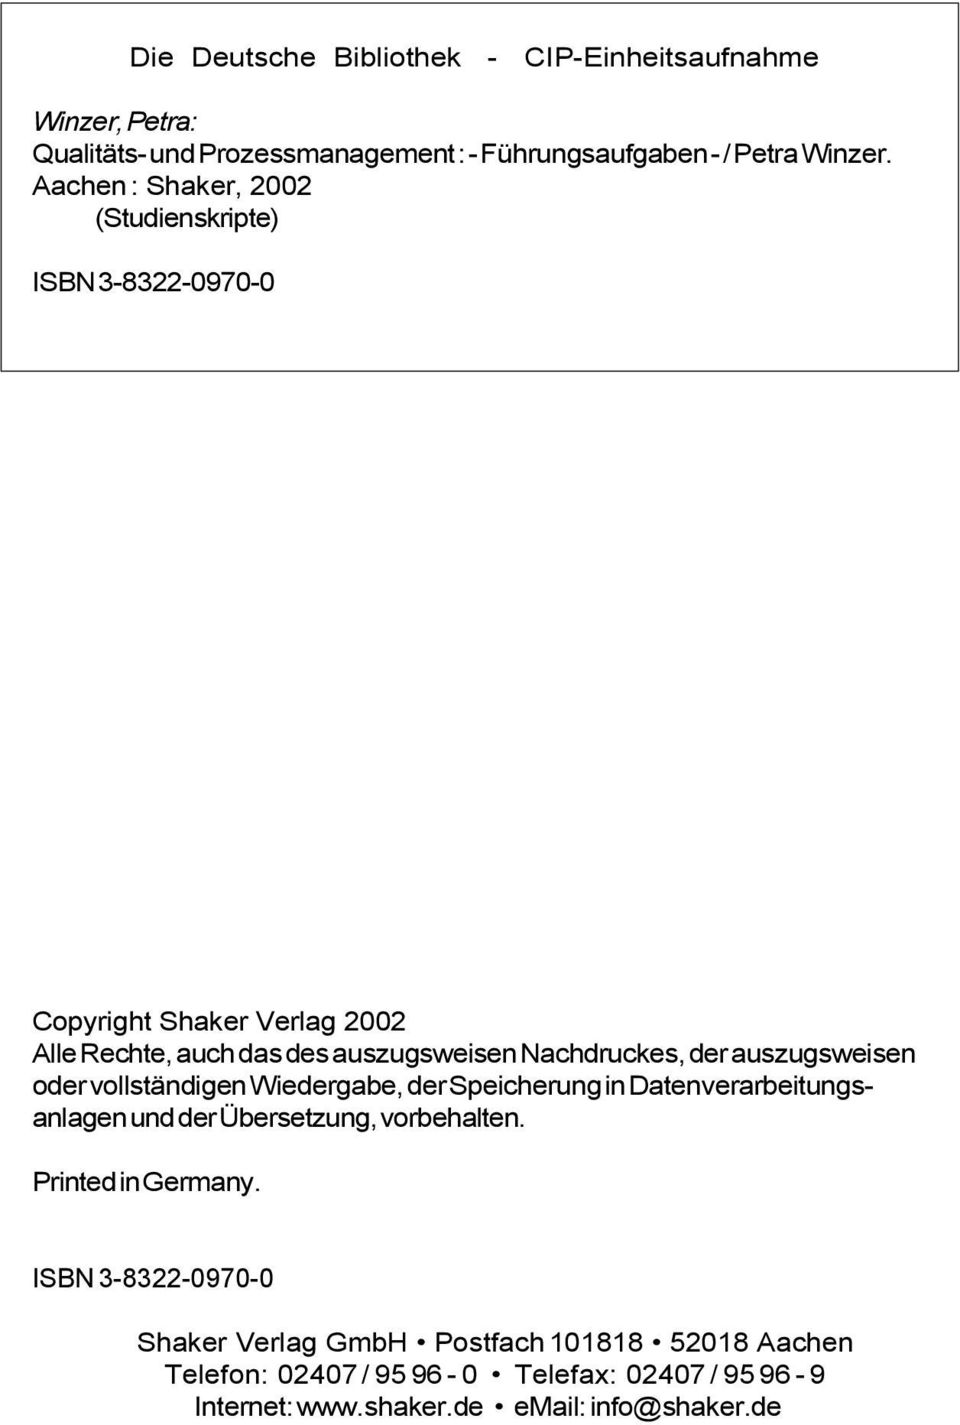 Copyright Shaker Verlag 2002 Alle Rechte, auch das des auszugsweisen Nachdruckes, der auszugsweisen oder vollständigen Wiedergabe, der Speicherung in